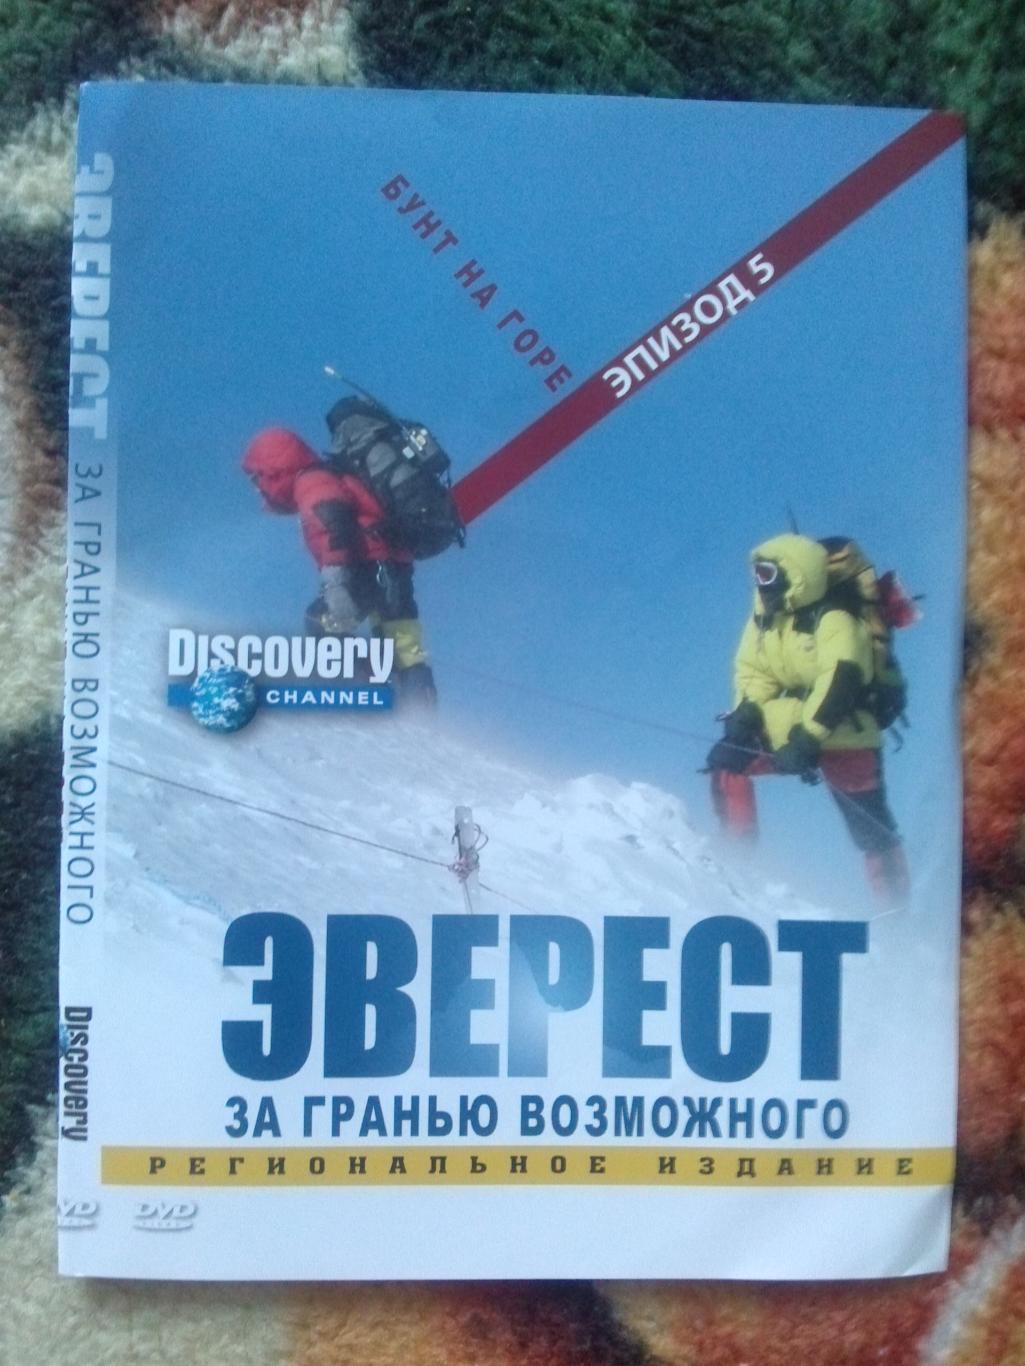 DVD Discovery Эверест - за гранью возможного. Альпинизм (Документальный фильм)